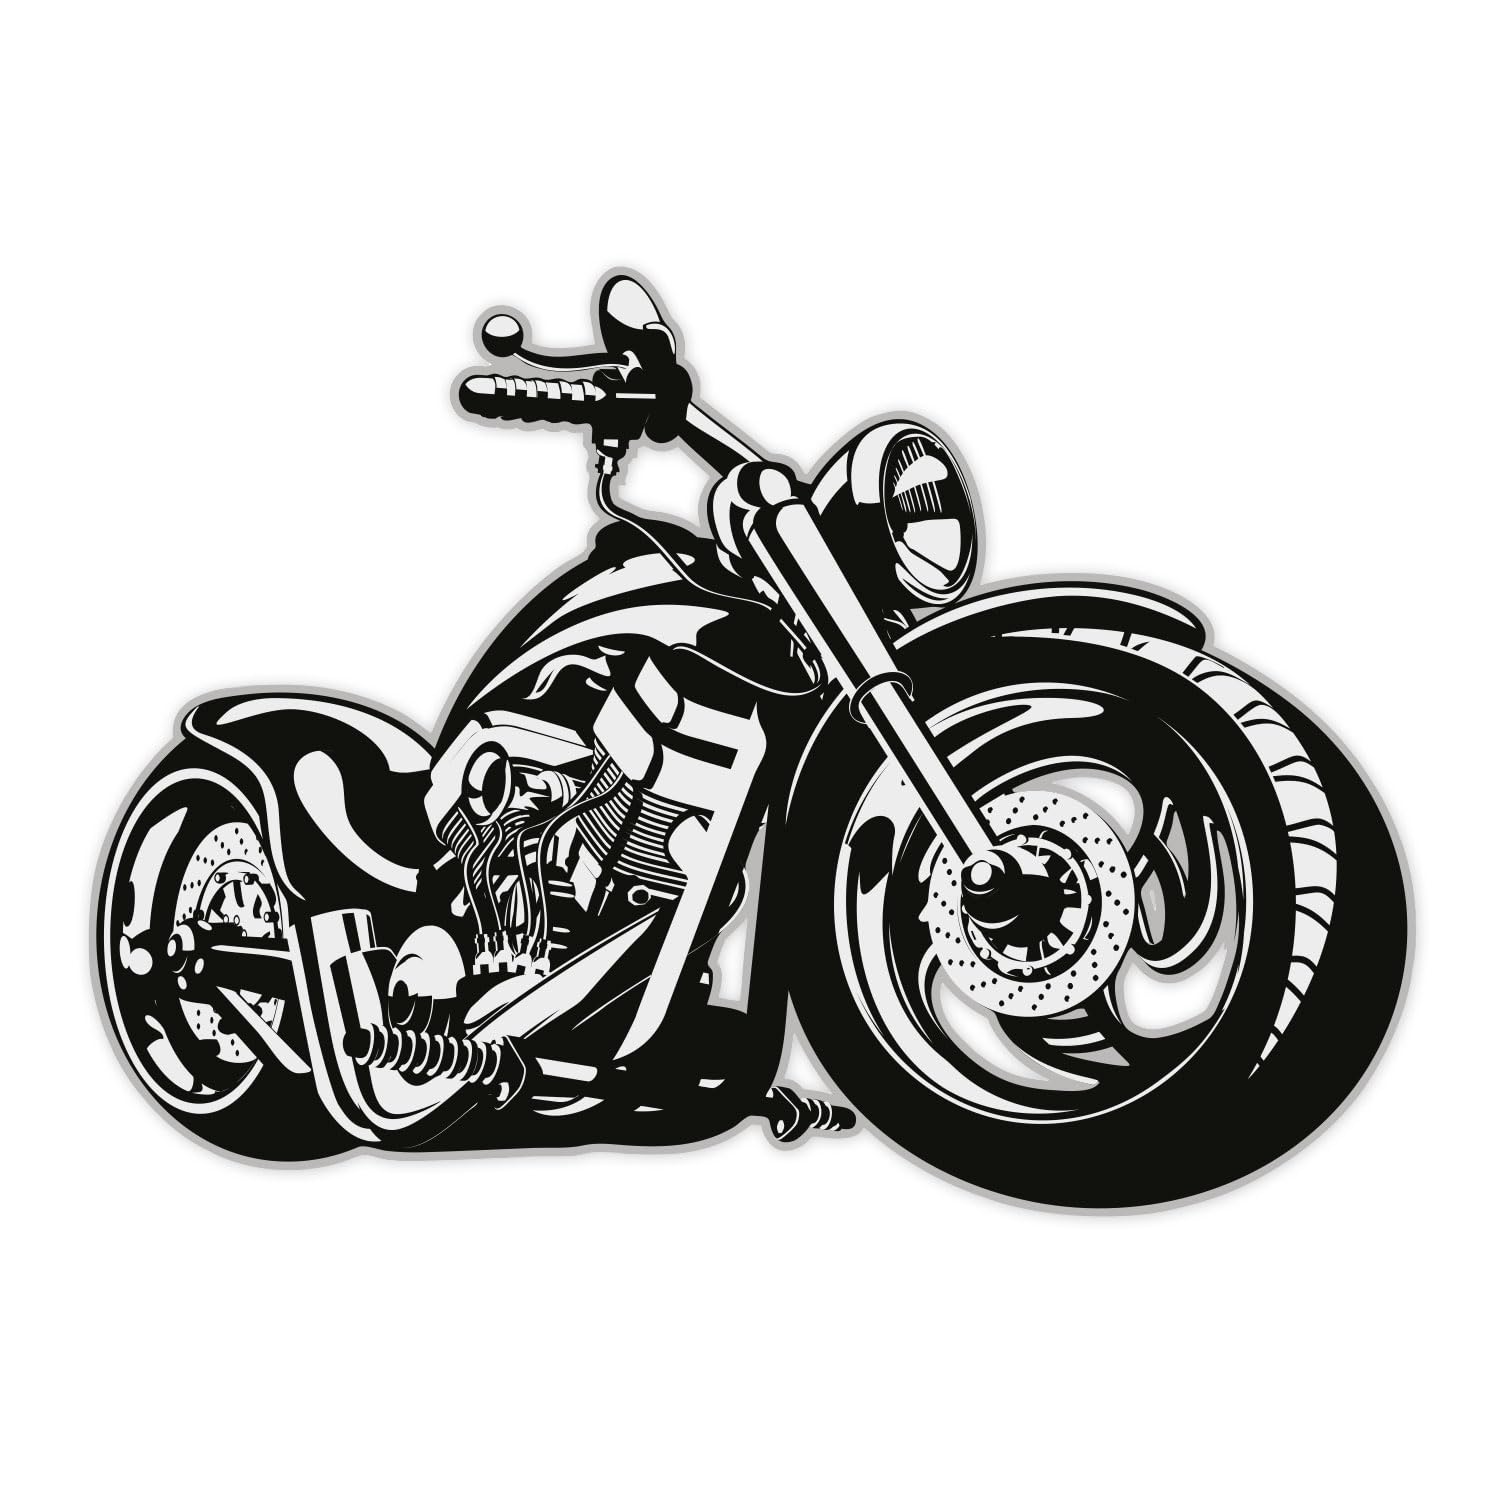 iSecur Wandtattoo Custom Bike, Art. Nr. kfz_518, Schwarz/Weiß, Harley Moped Chopper, Tattoo für die Wand, Matt laminiert, Vergilbungsfrei, Raufaser geeignet (1000mm x 720mm) von iSecur